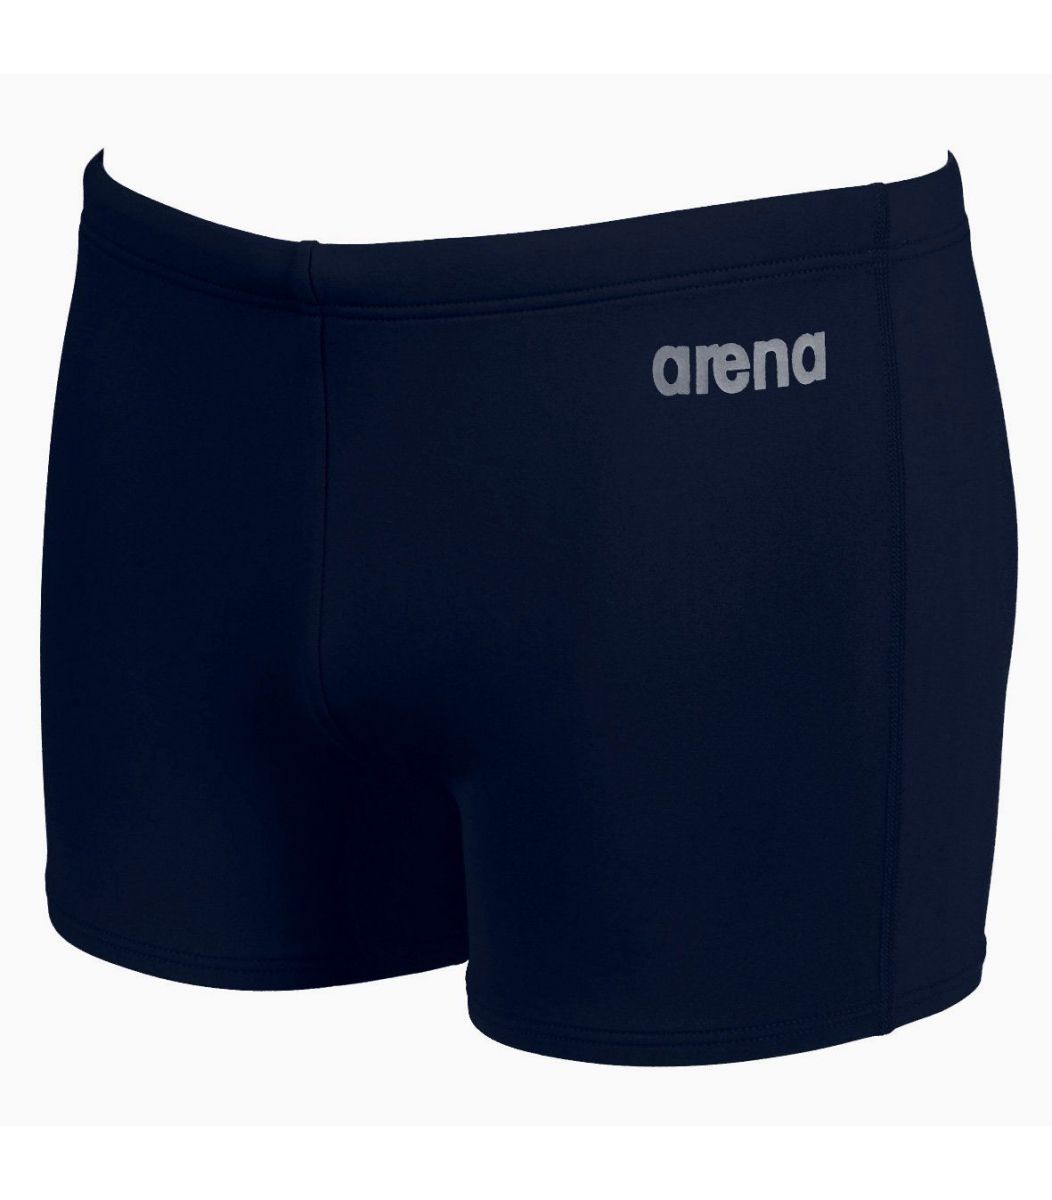  Swimwear Arena Arena Boy Swimwear Bynarx Jr 2117975-1